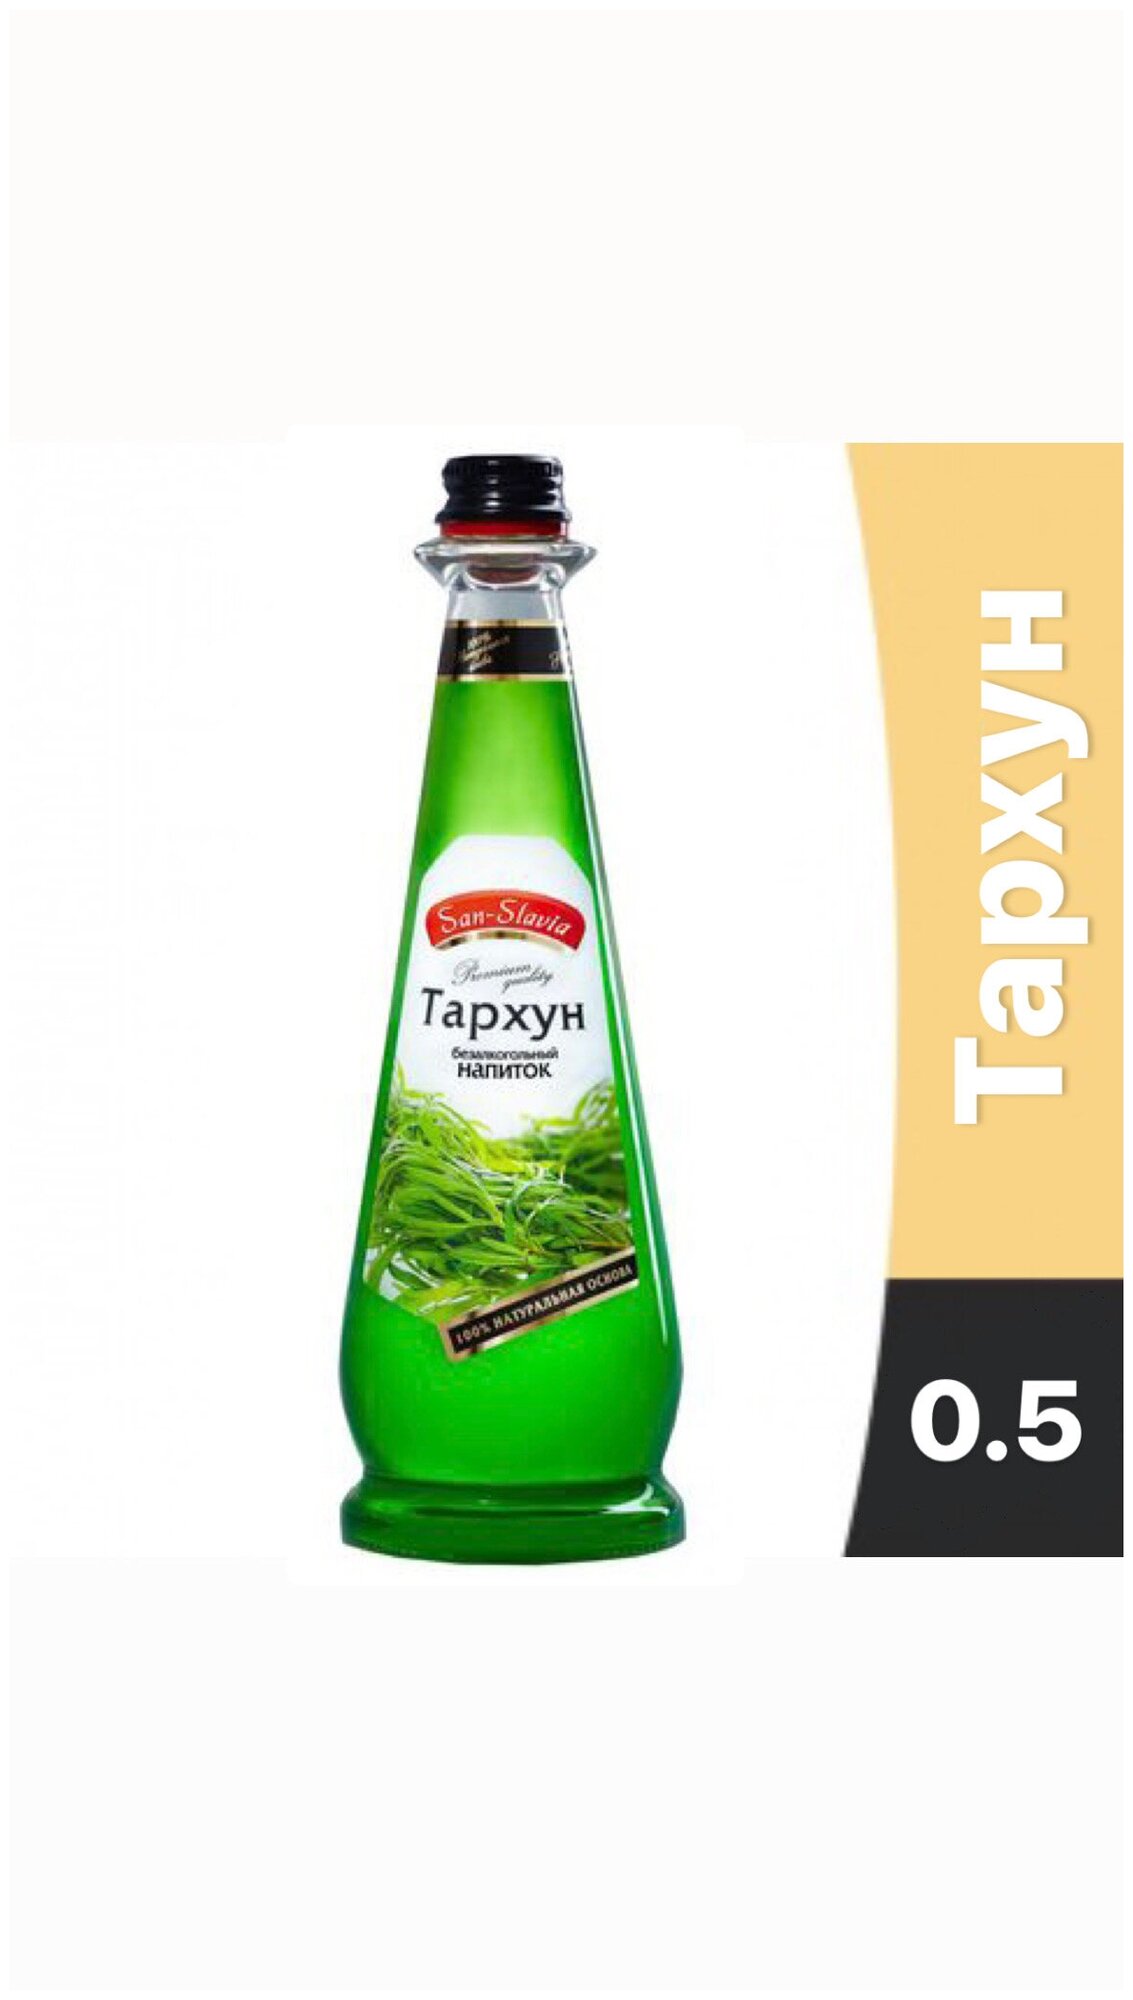 San-Slavia тархун безалкогольный напиток 0.5 12шт стекло - фотография № 1